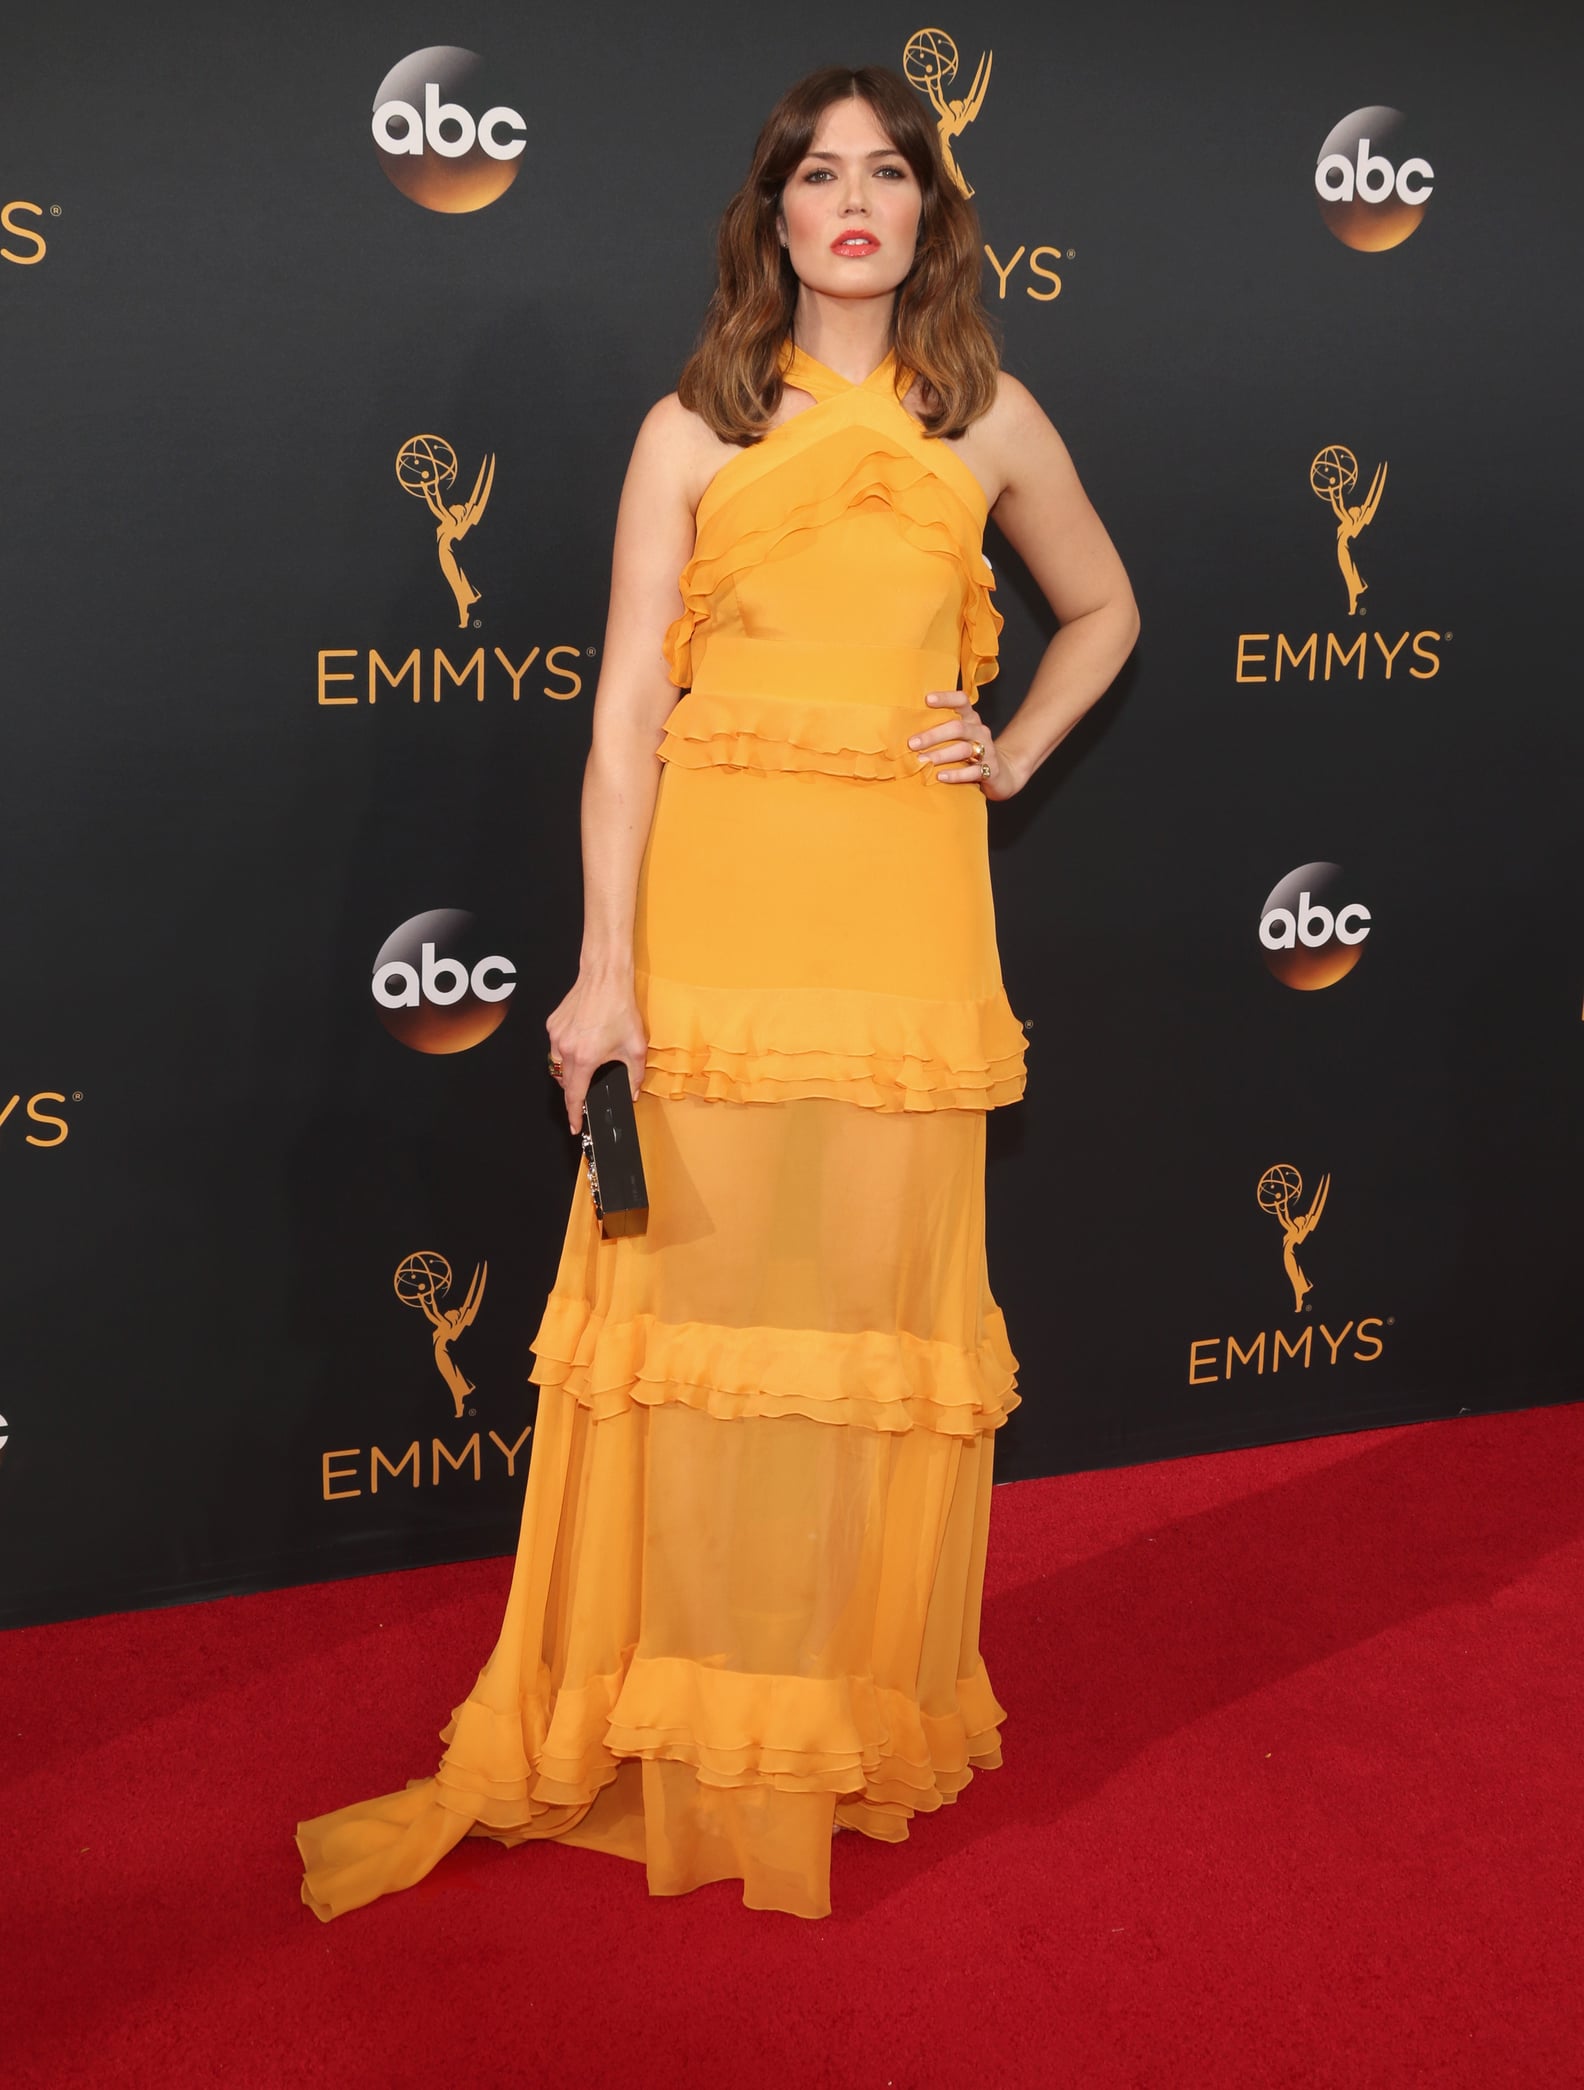 Emmys Red Carpet Dresses 2016 | POPSUGAR Fashion